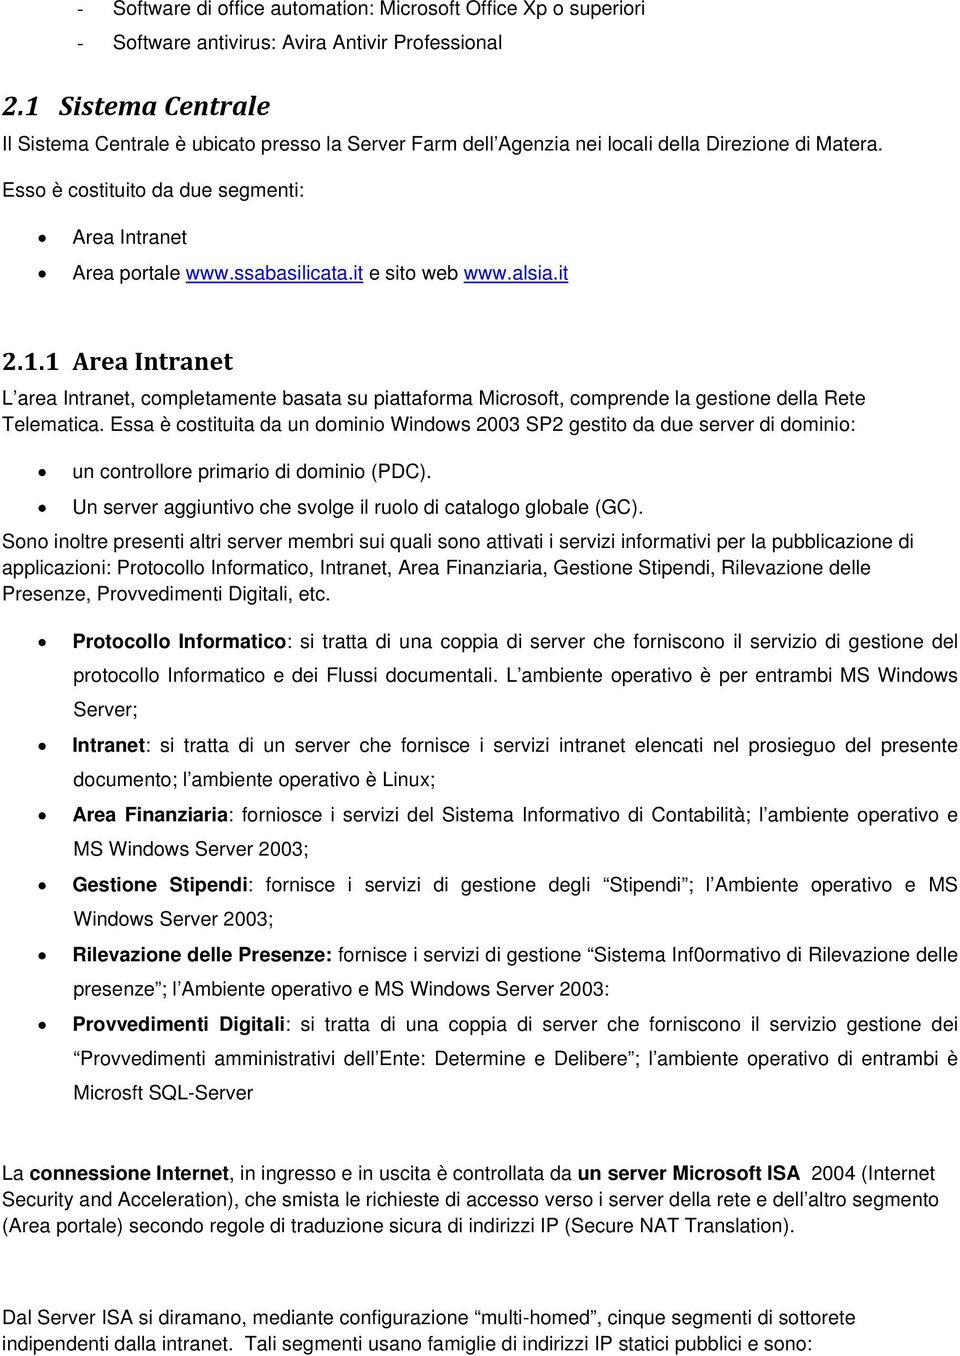 ssabasilicata.it e sito web www.alsia.it 2.1.1 Area Intranet L area Intranet, completamente basata su piattaforma Microsoft, comprende la gestione della Rete Telematica.